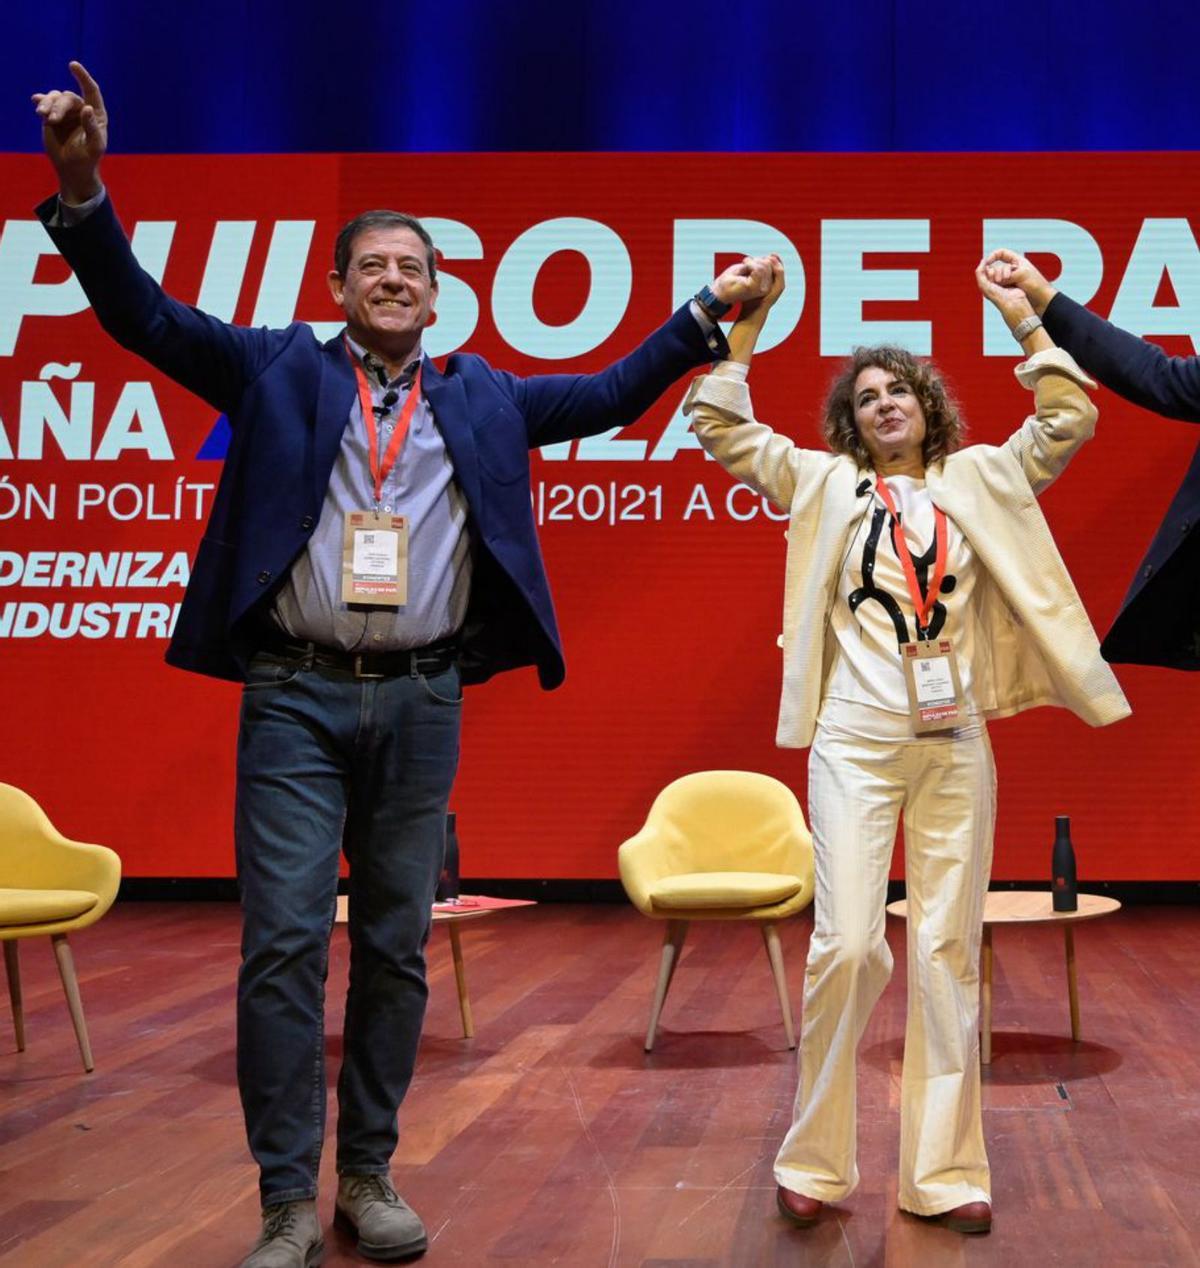 El PSOE enllesteix el seu nou projecte polític sense un debat intern